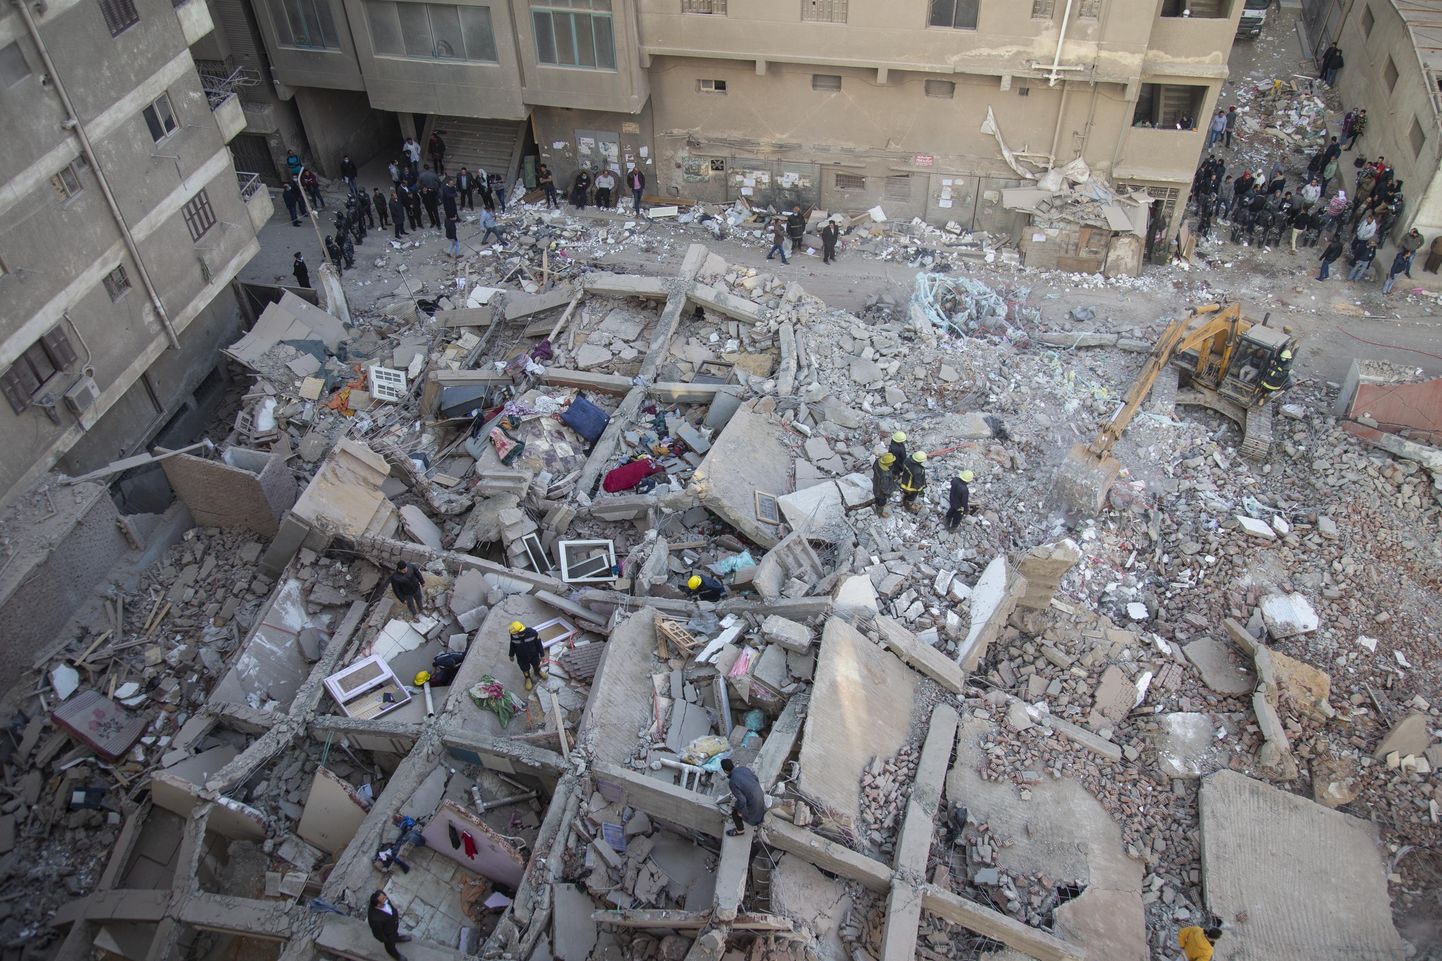 Kairos toimunud hoone kokkuvarisemise tagajärjed 2021. aasta märtsis. Pilt on illustreeriv.